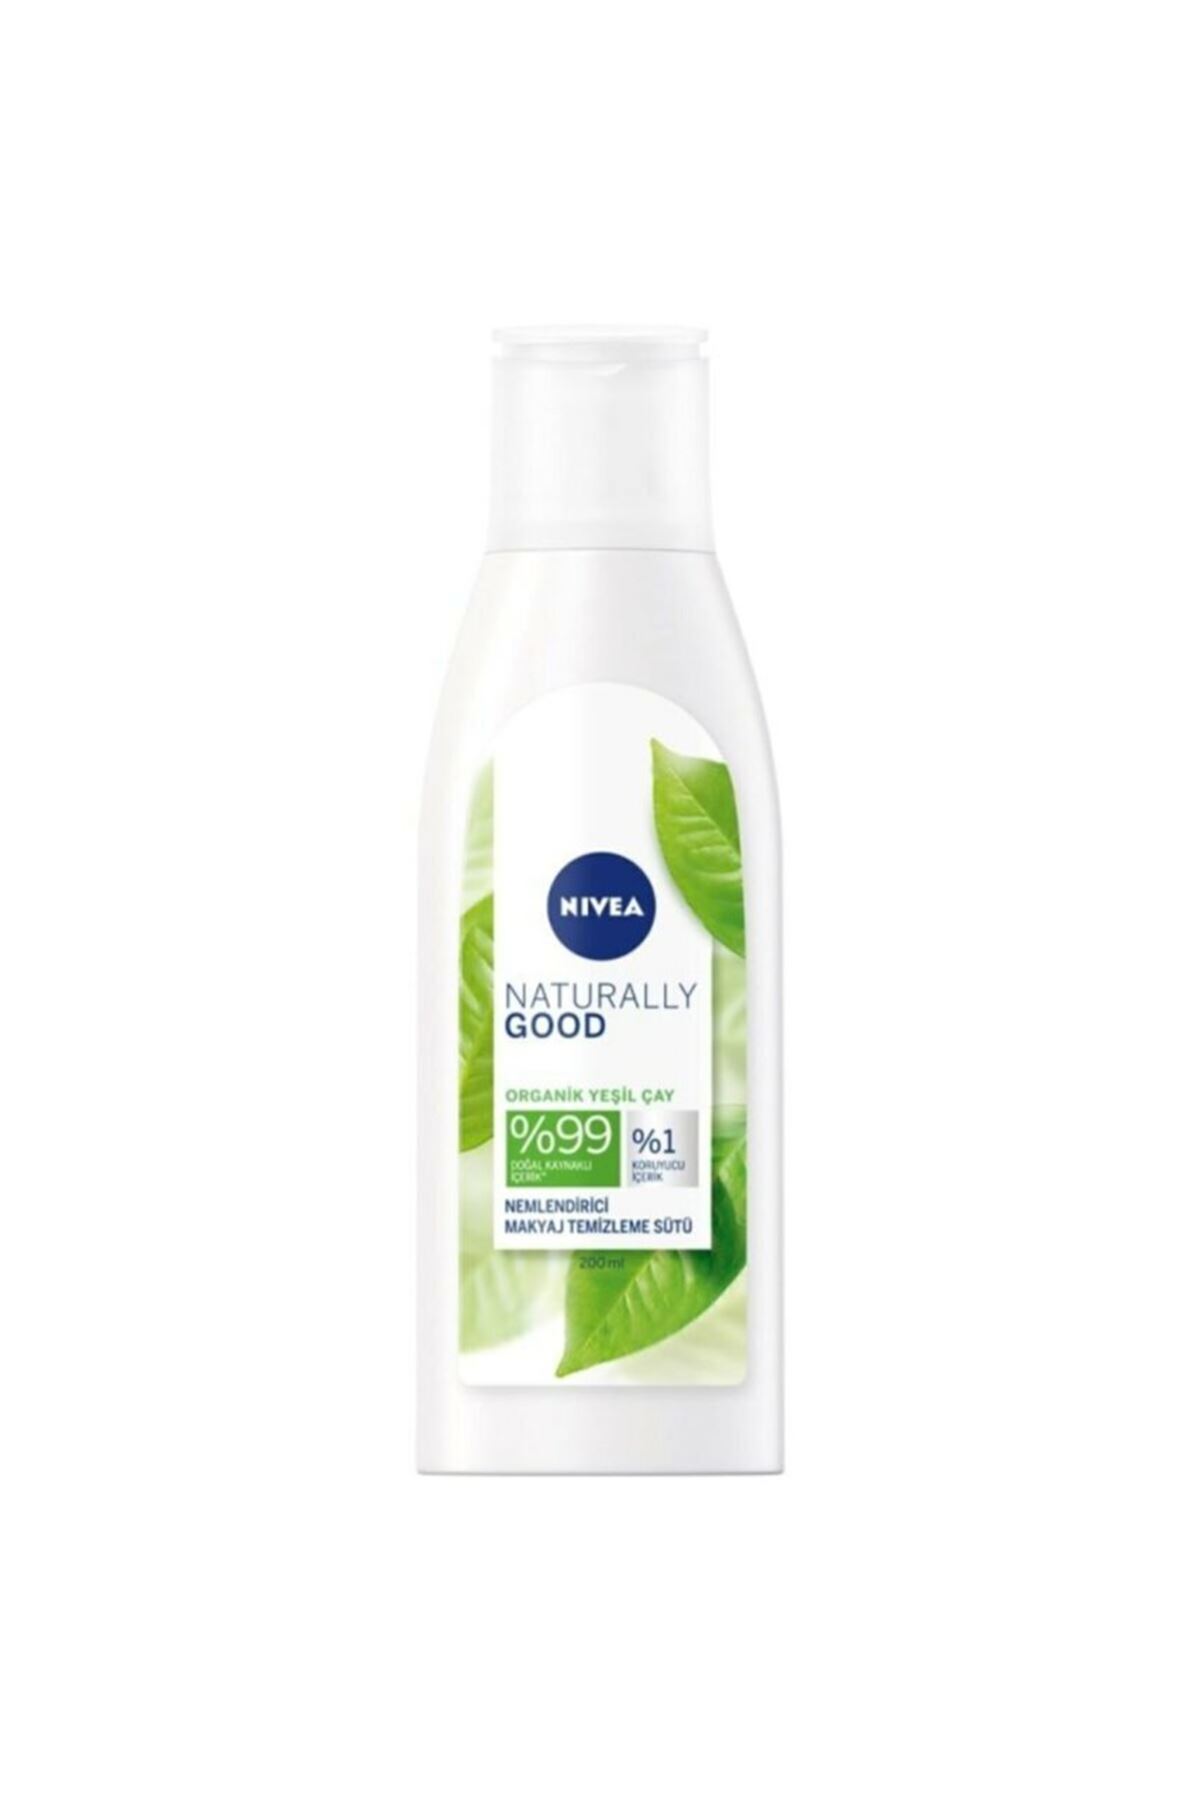 NIVEA Naturally Good Organik Yeşil Çay İçeren Makyaj Temizleme Sütü 200 ML